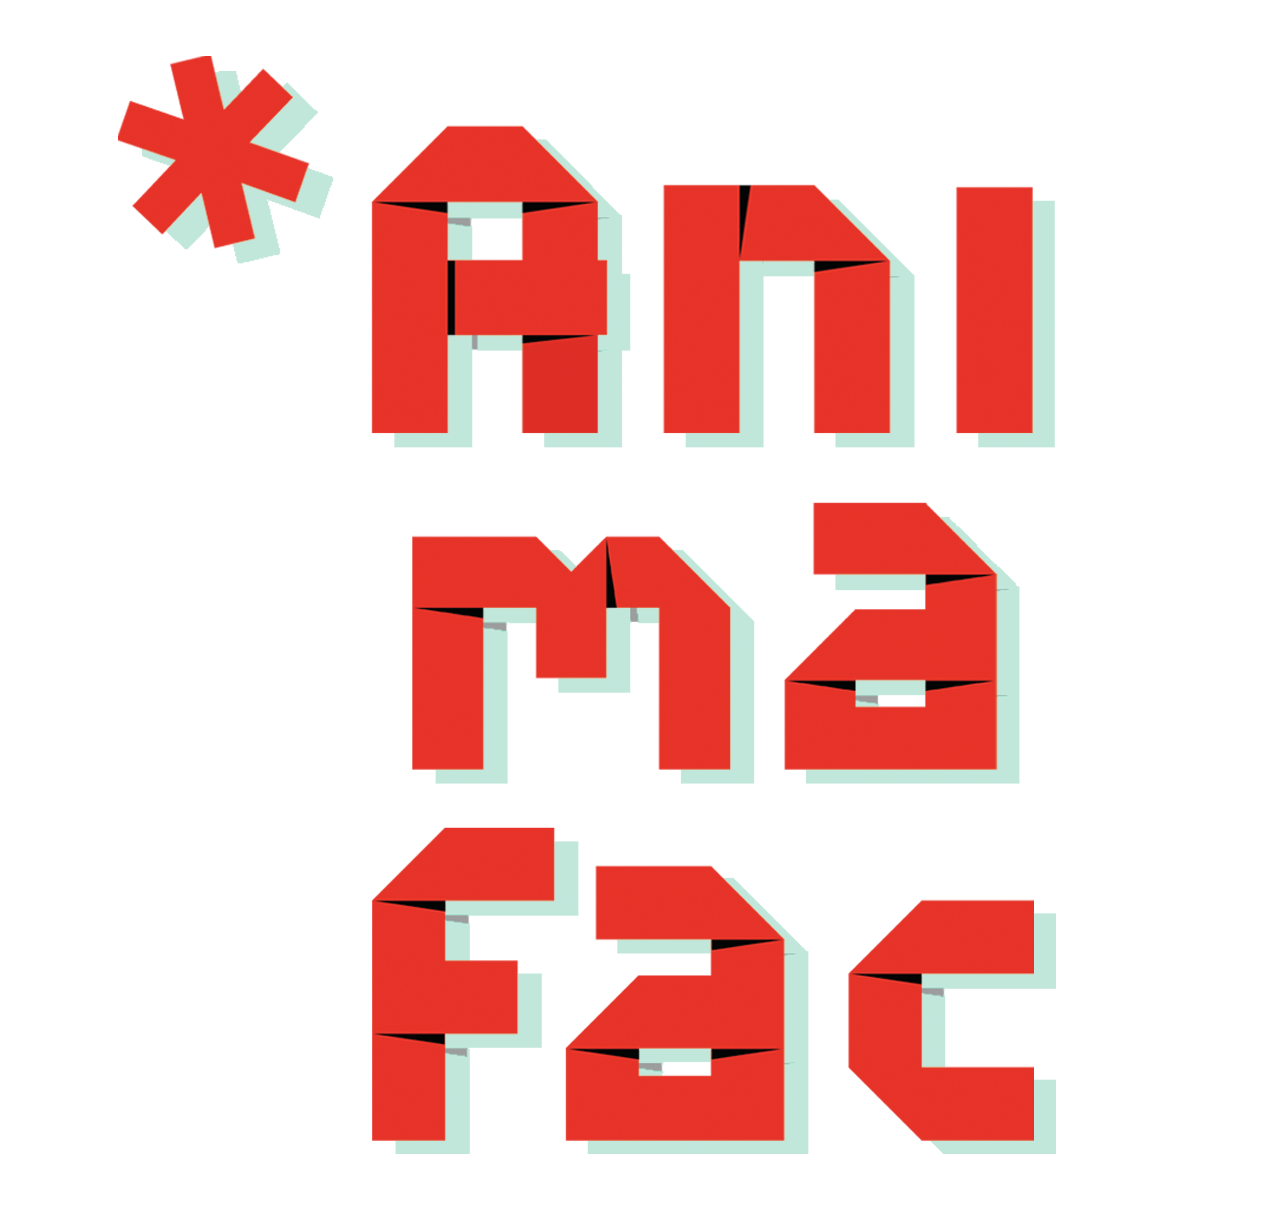 Animafac